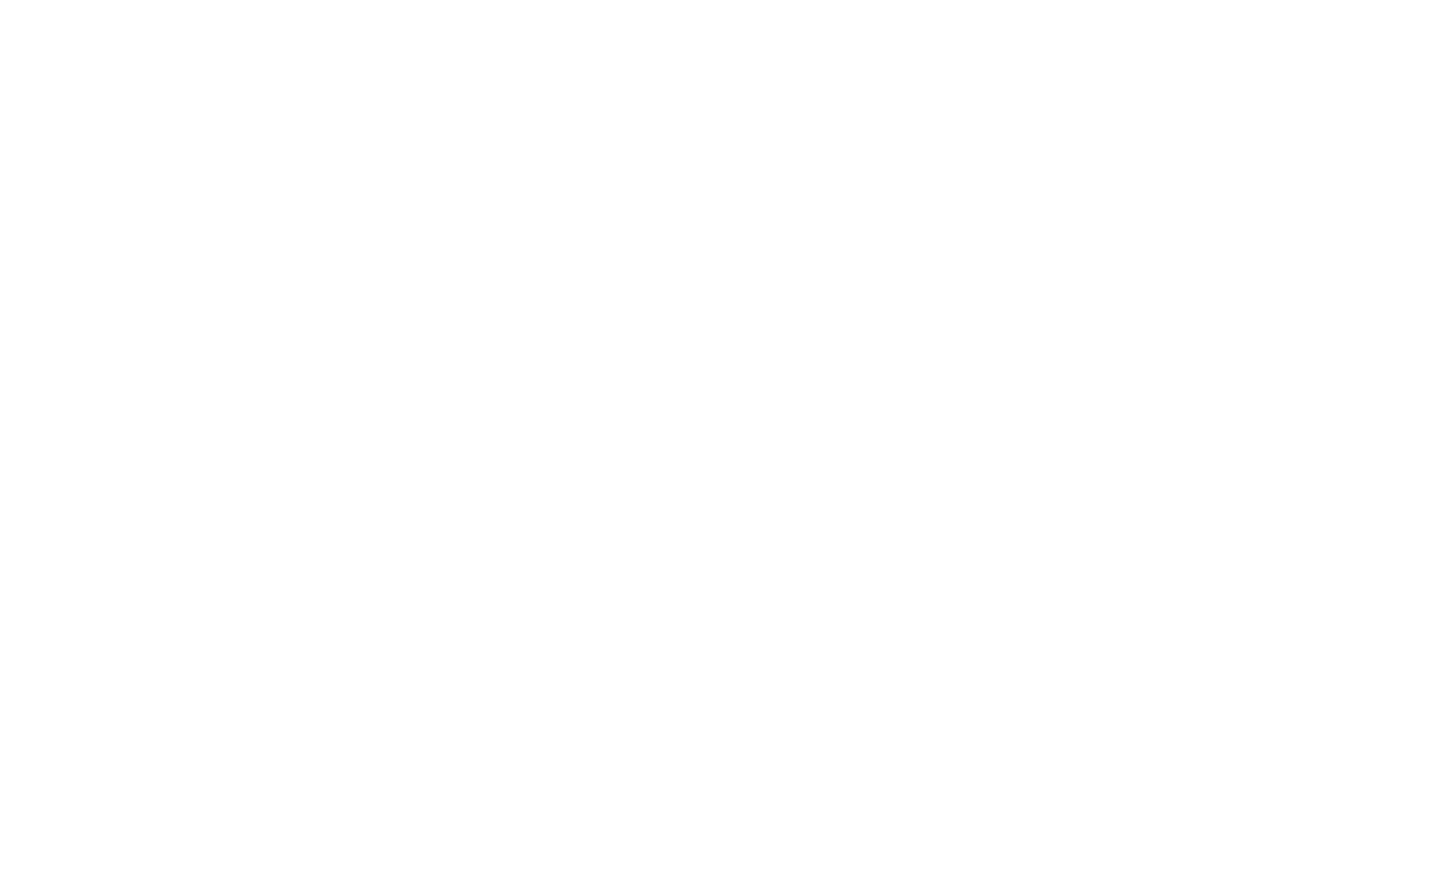 Federación Guatemalteca de Escuelas Radiofónicas